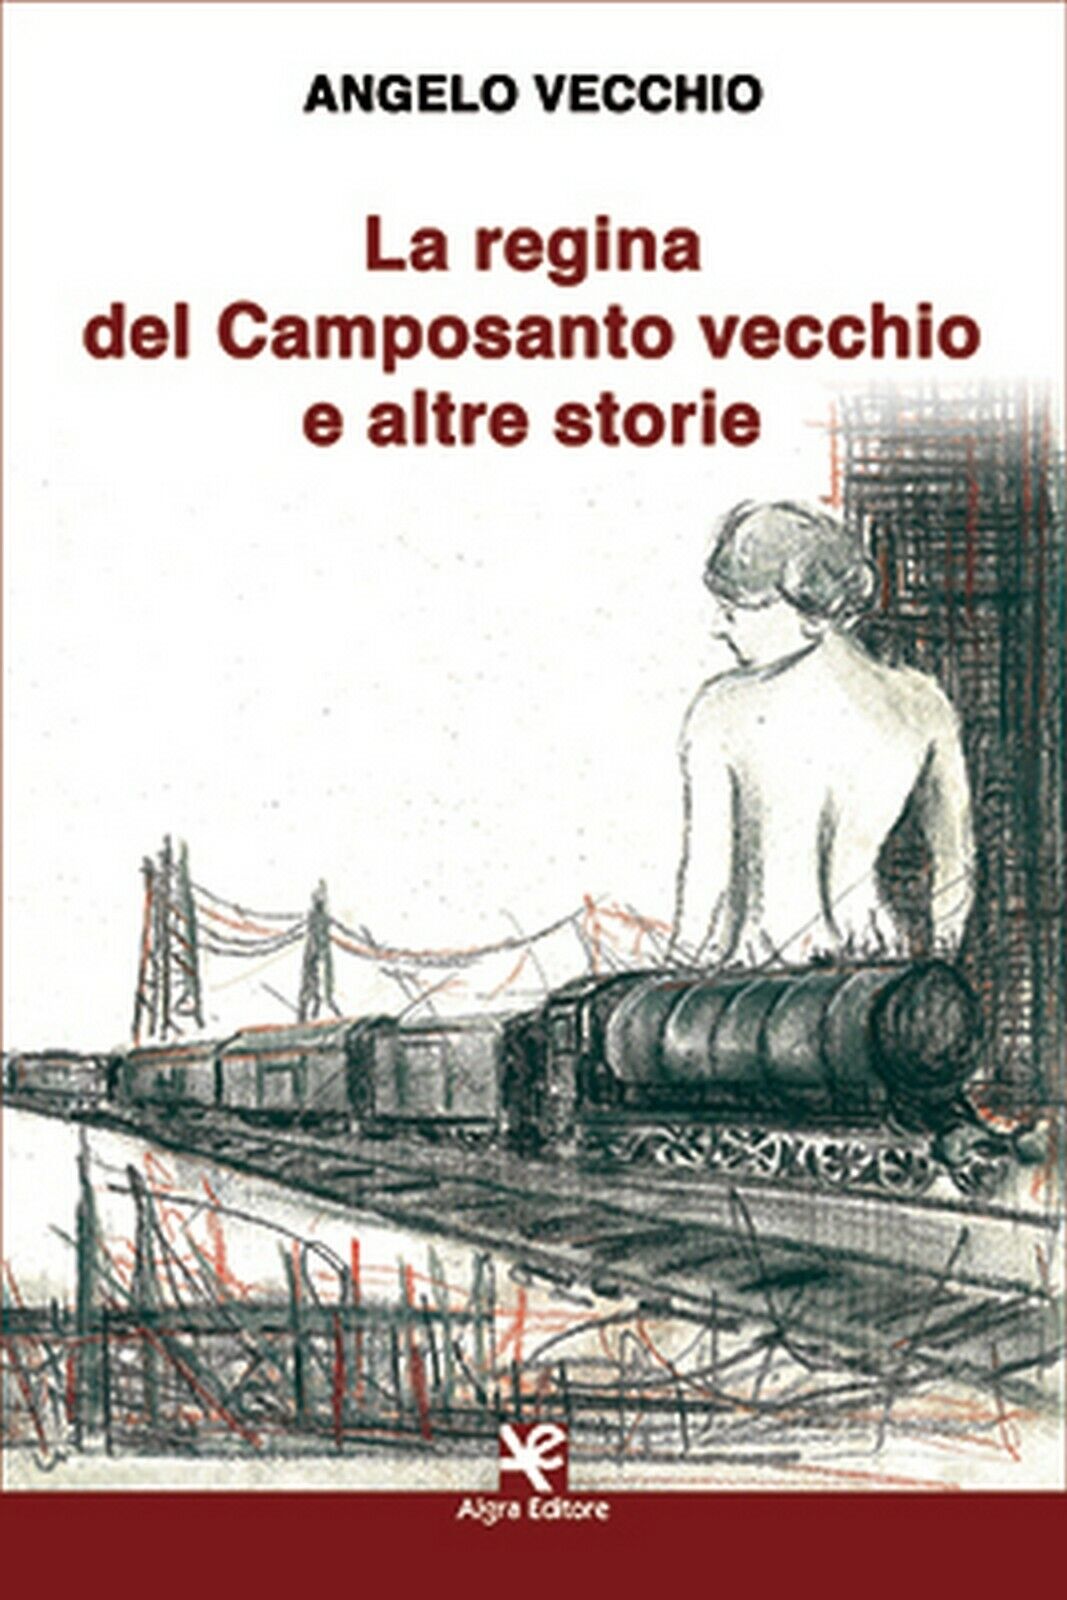 La regina del Camposanto vecchio e altre storie  di Angelo Vecchio,  Algra Ed.